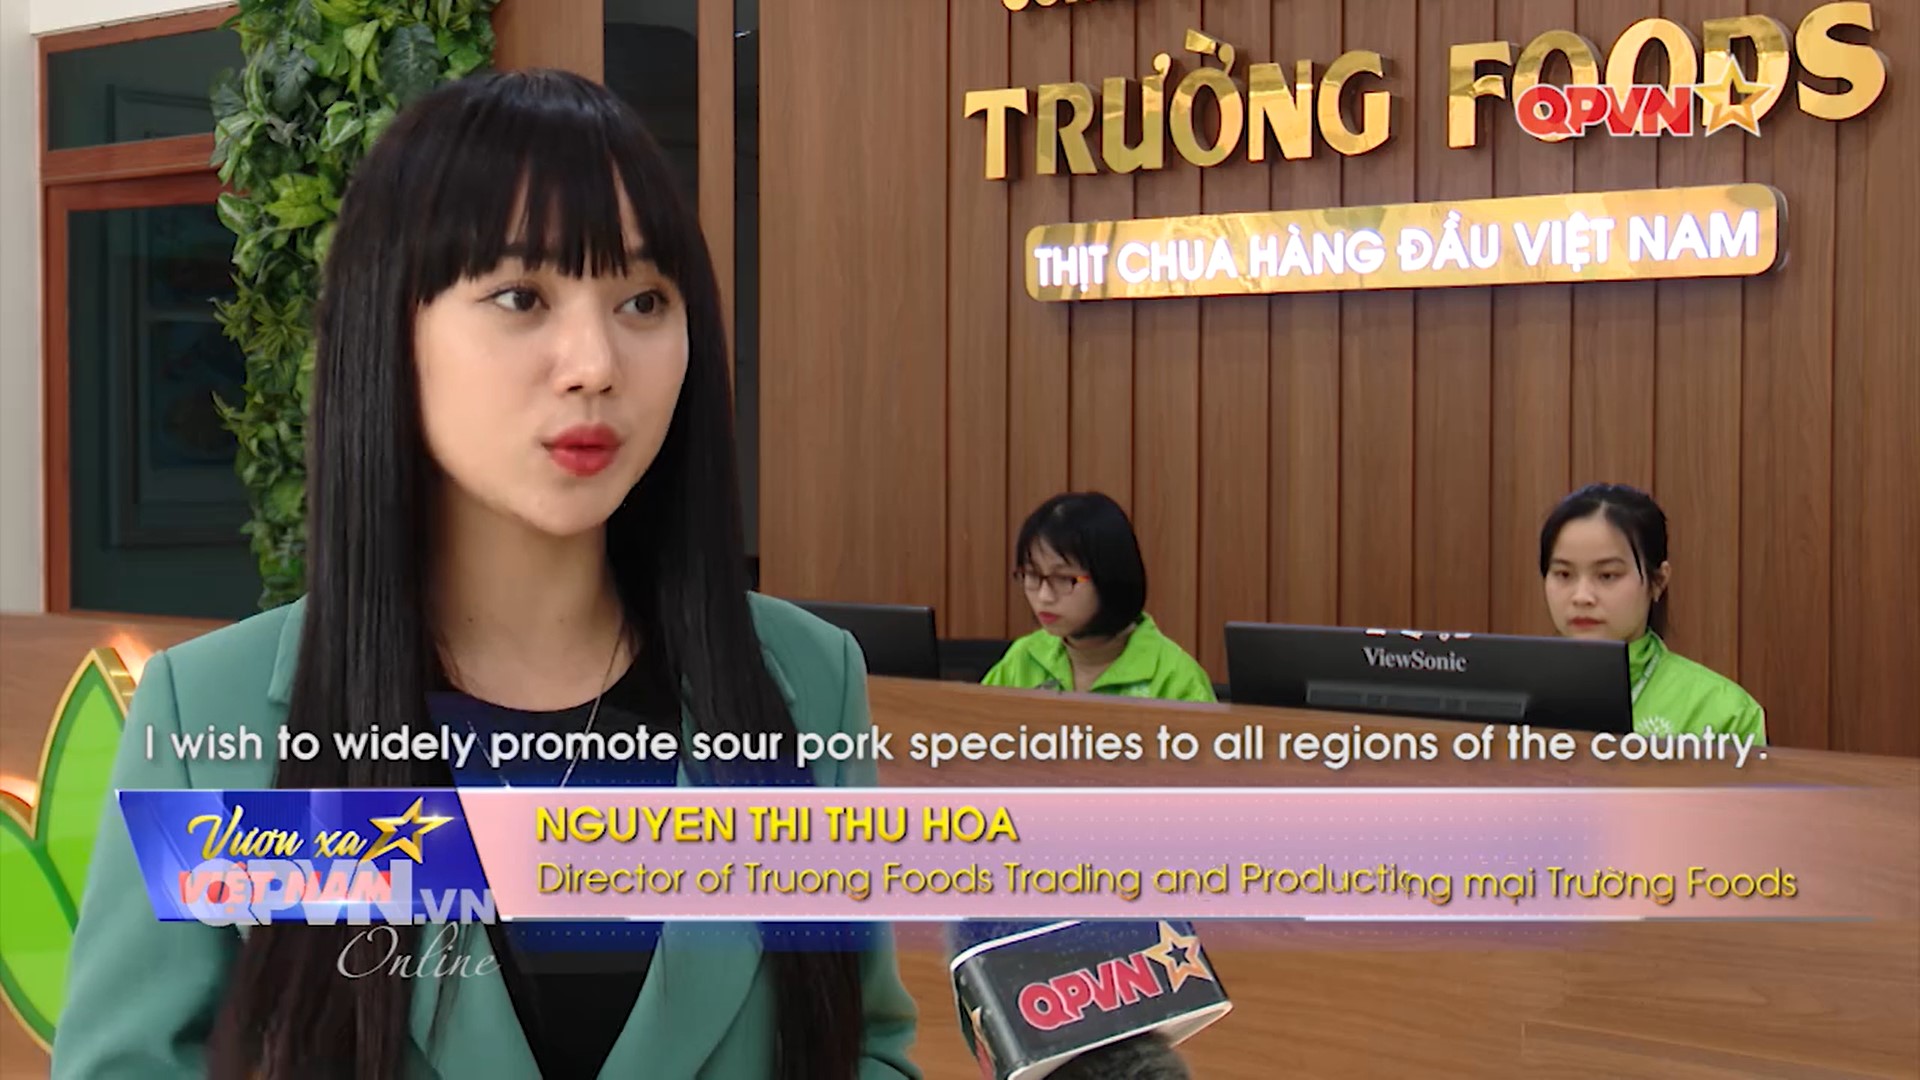 CEO Trường Foods - Nguyễn Thị Thu Hoa